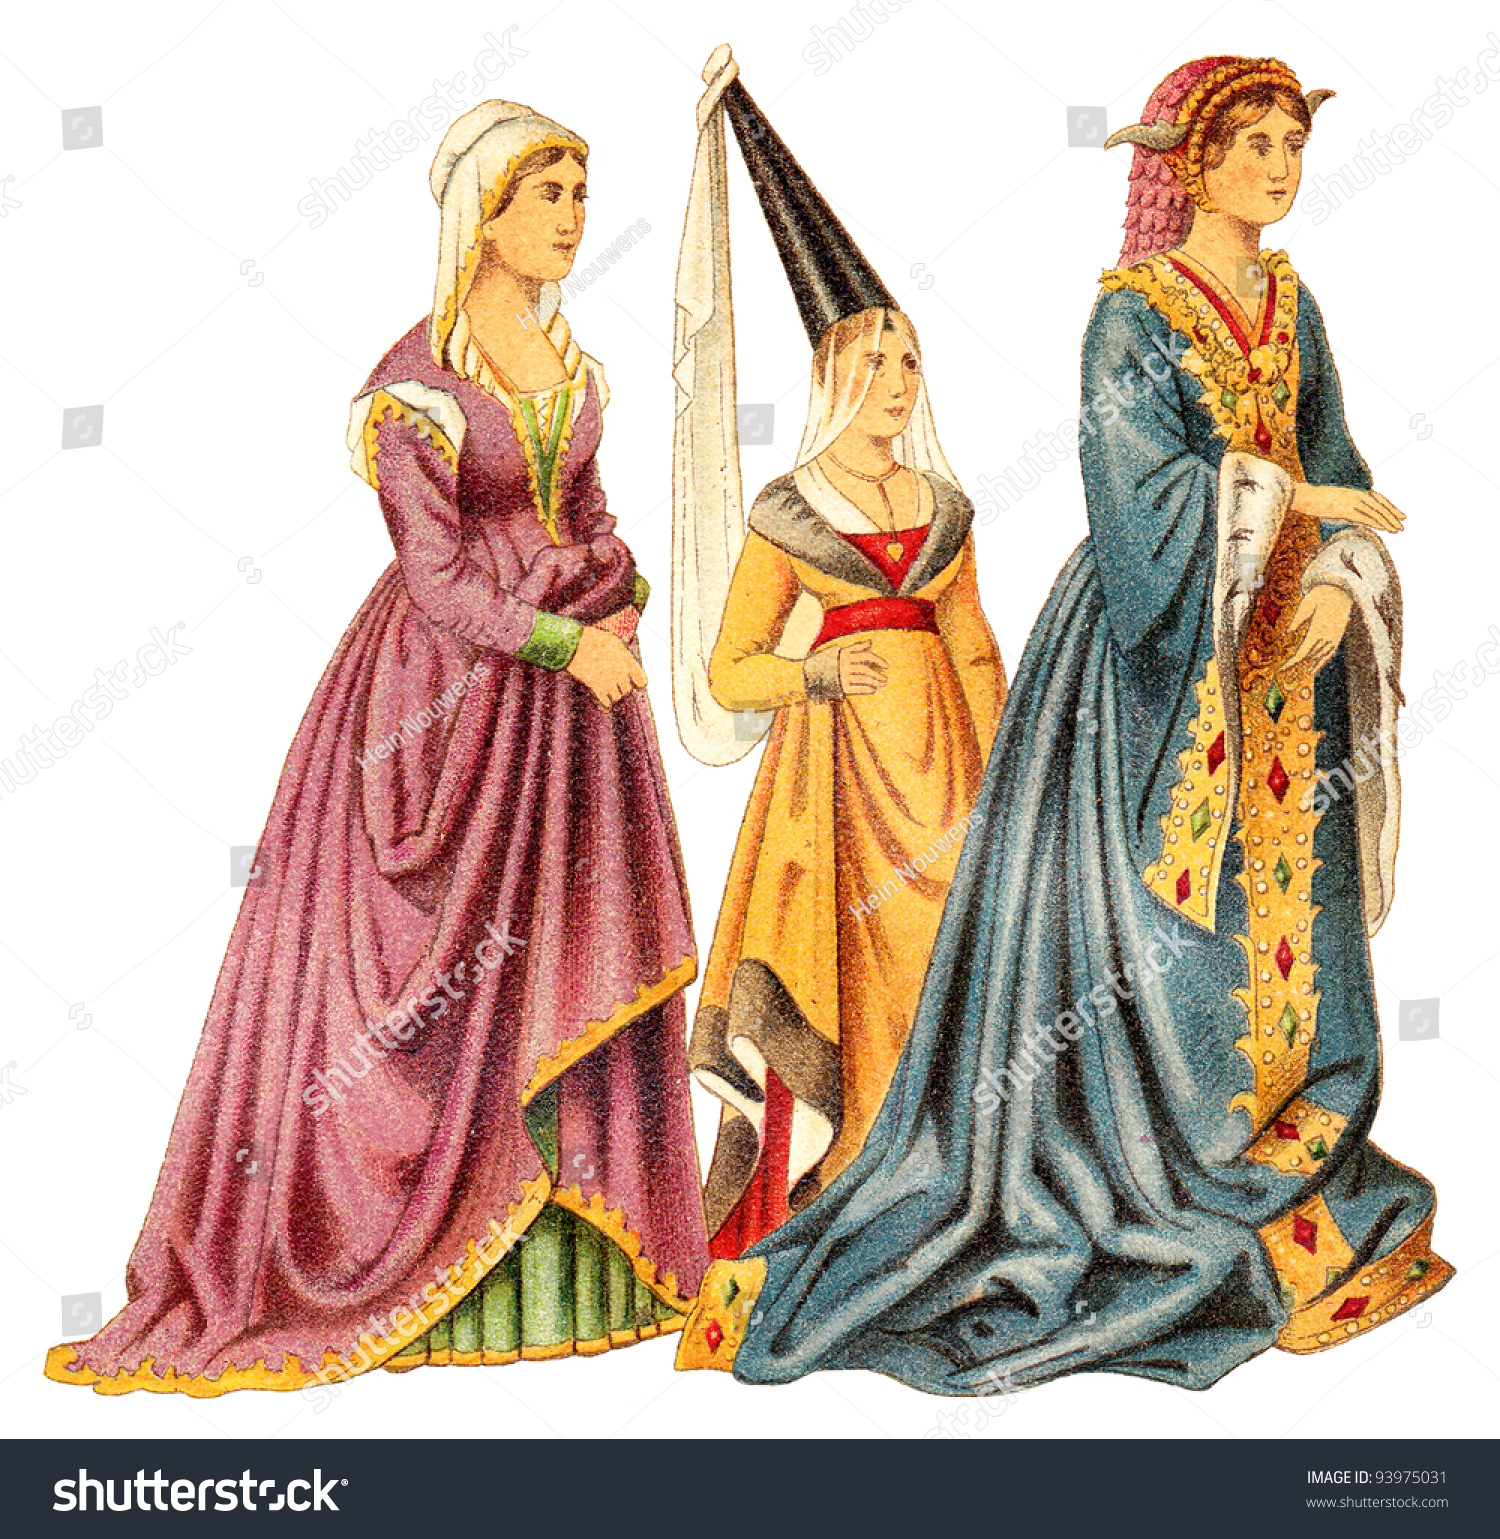 Одежда эпохи средневековья. Костюм Западной Европы в эпоху средневековья. Средневековая мода романский стиль. Эннен одежда средневековья. Готический стиль в одежде средневековья у женщин.